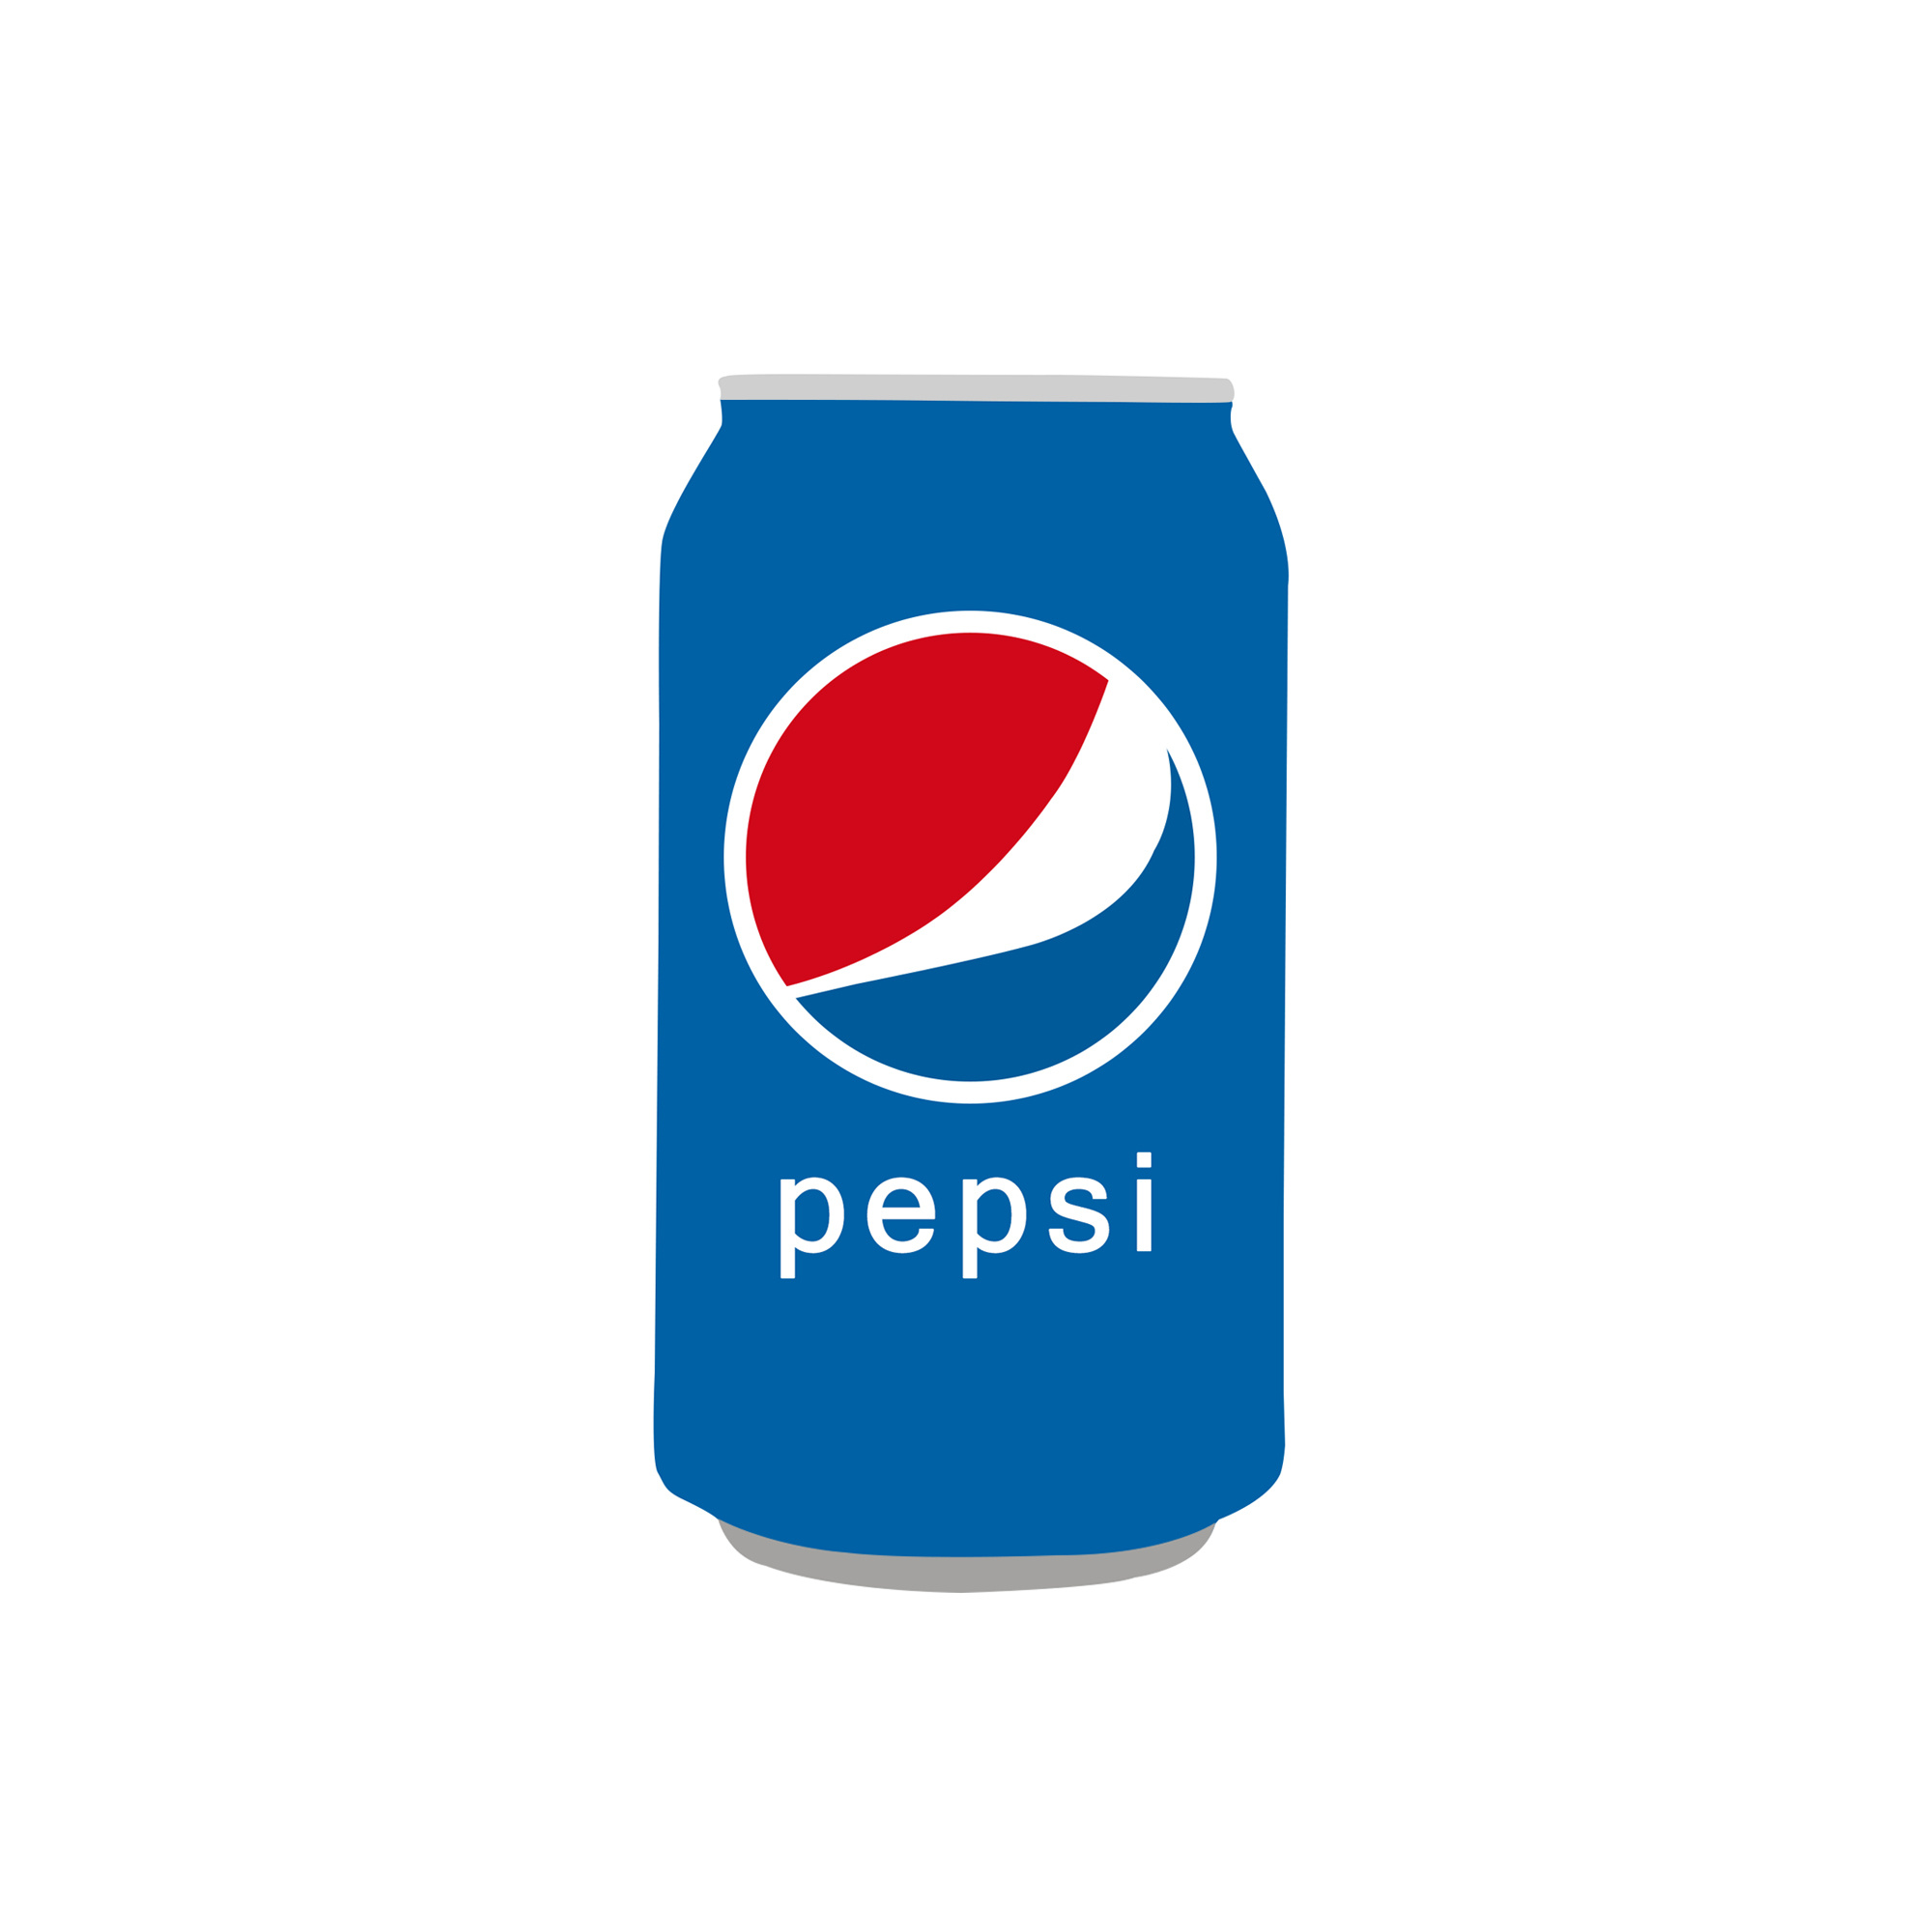 百事可乐logo复制图片